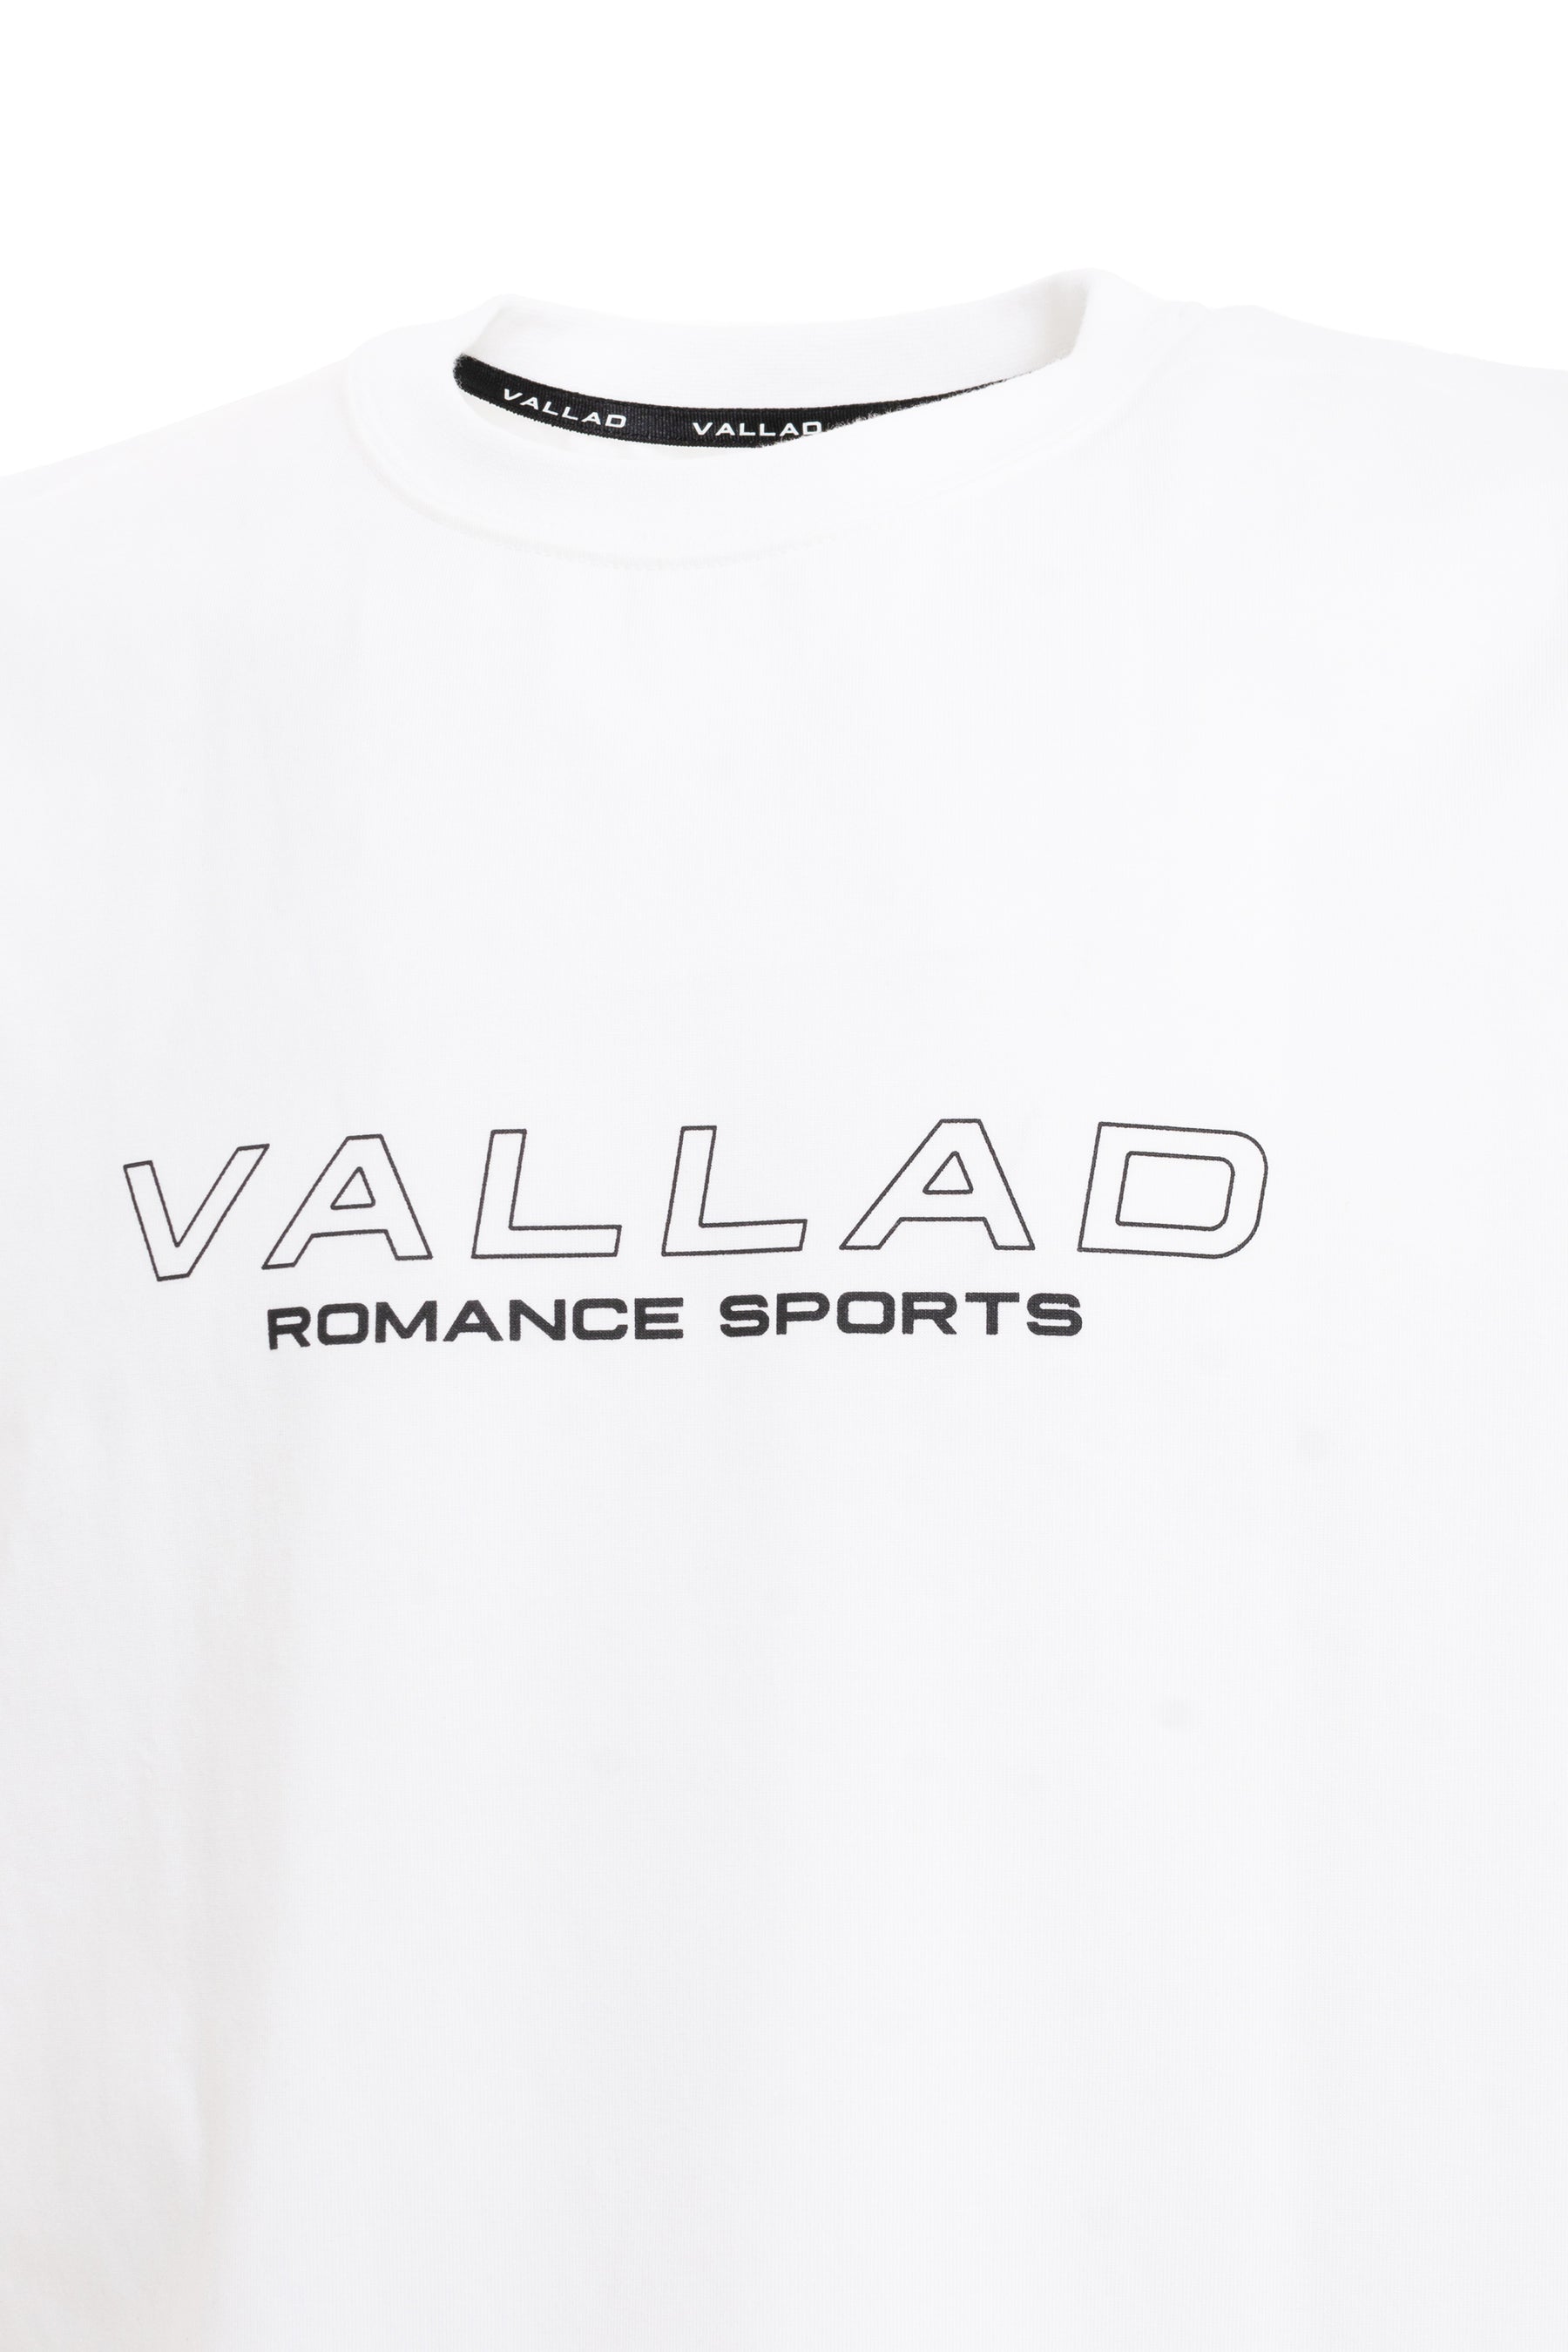 VALLAD ROMANCE SPORTS TEE / WHT